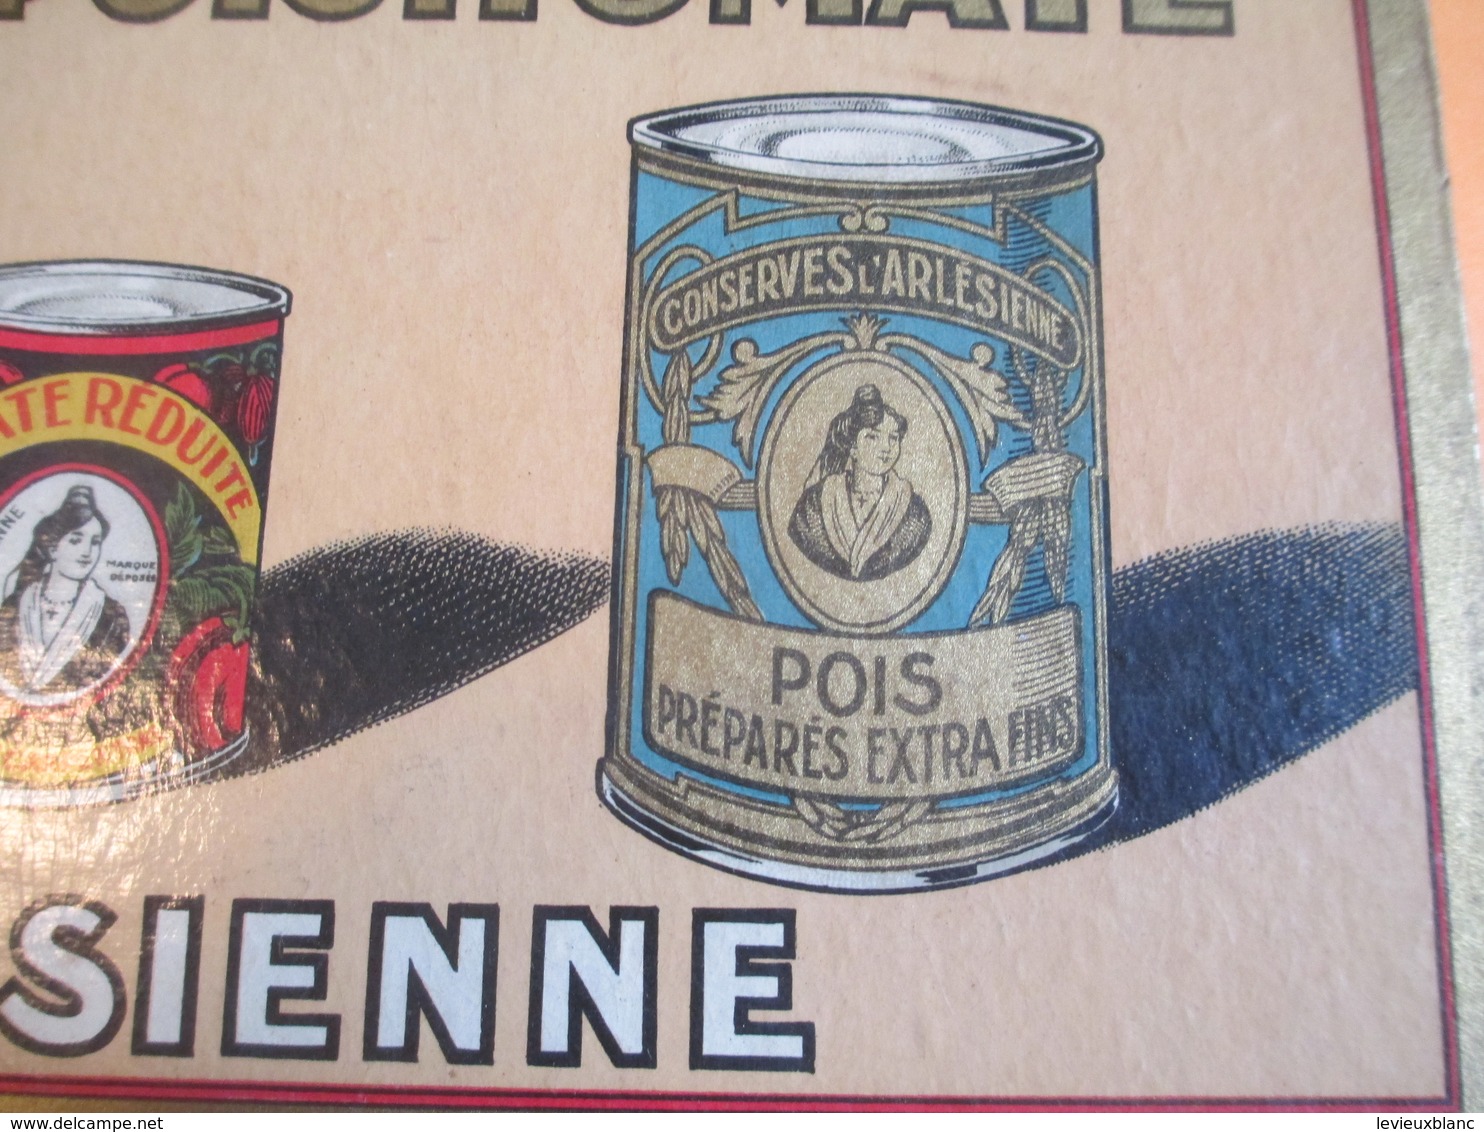 Publicité/ Plaque Carton/ L'Arlésienne / Haricots-Pois-Tomates/Paris - CARPENTRAS/ Vers 1930-50     BFP205 - Pappschilder